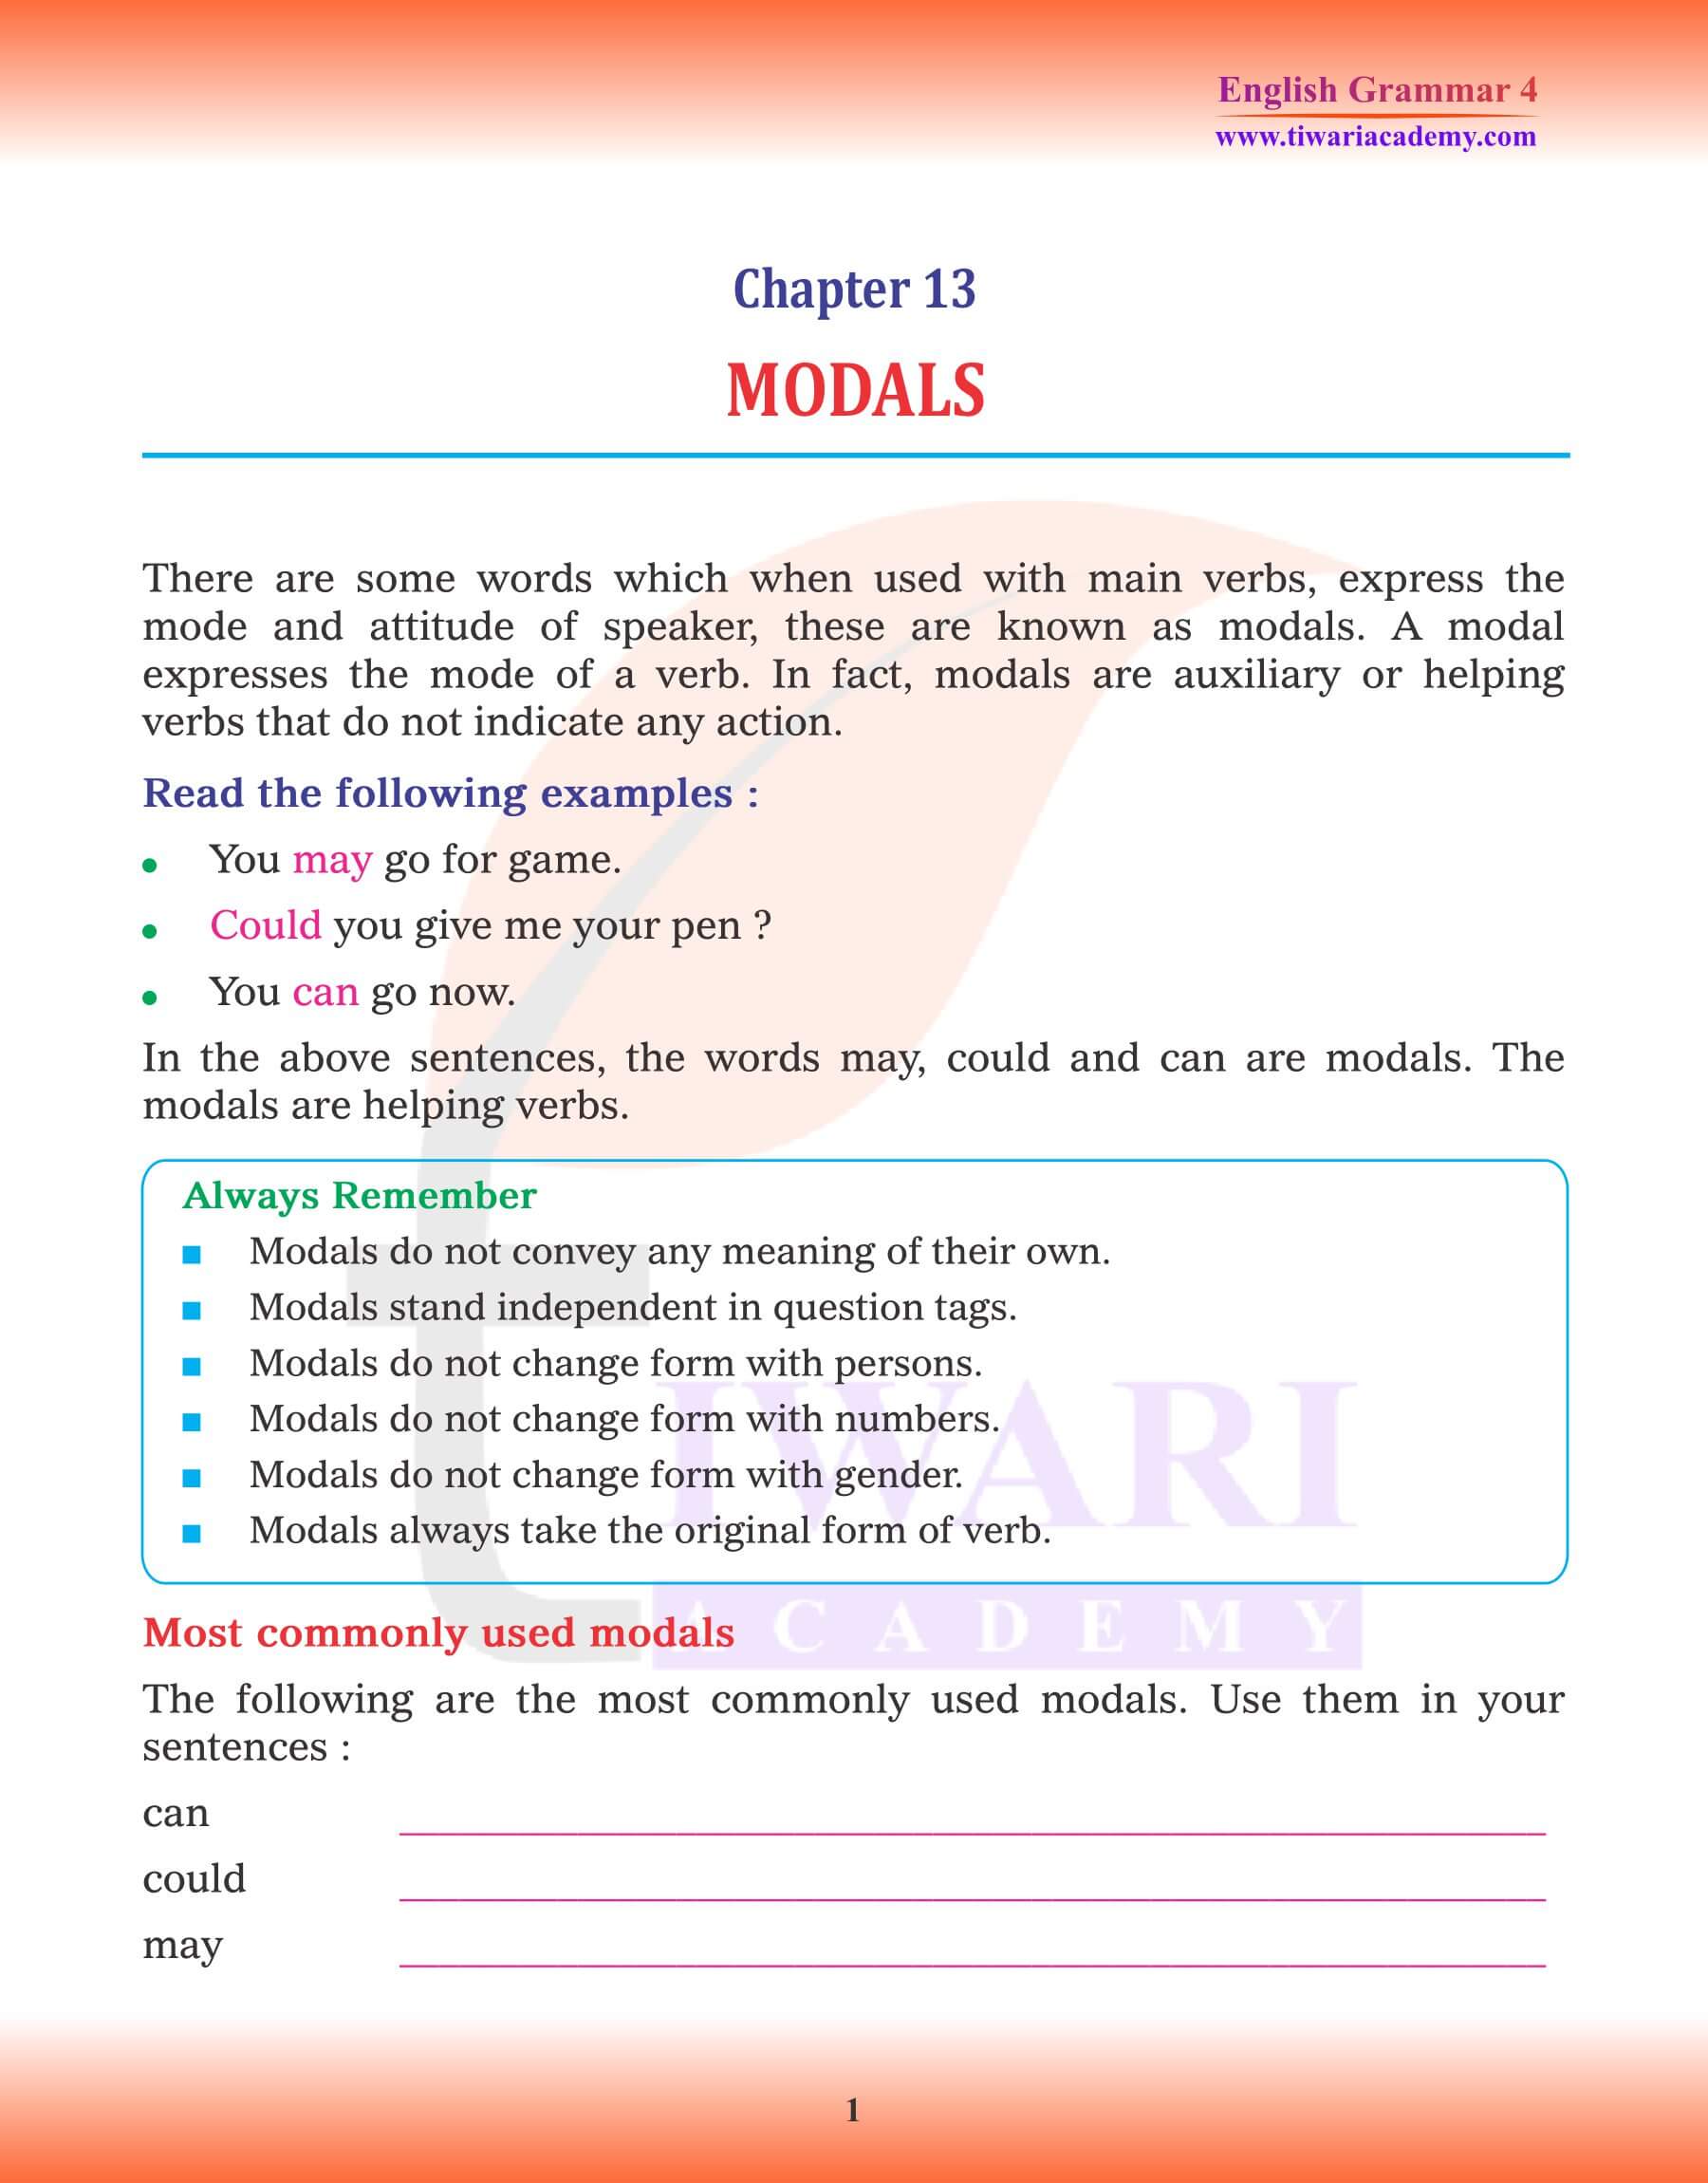 Class 4 Grammar Chapter 13 Modals